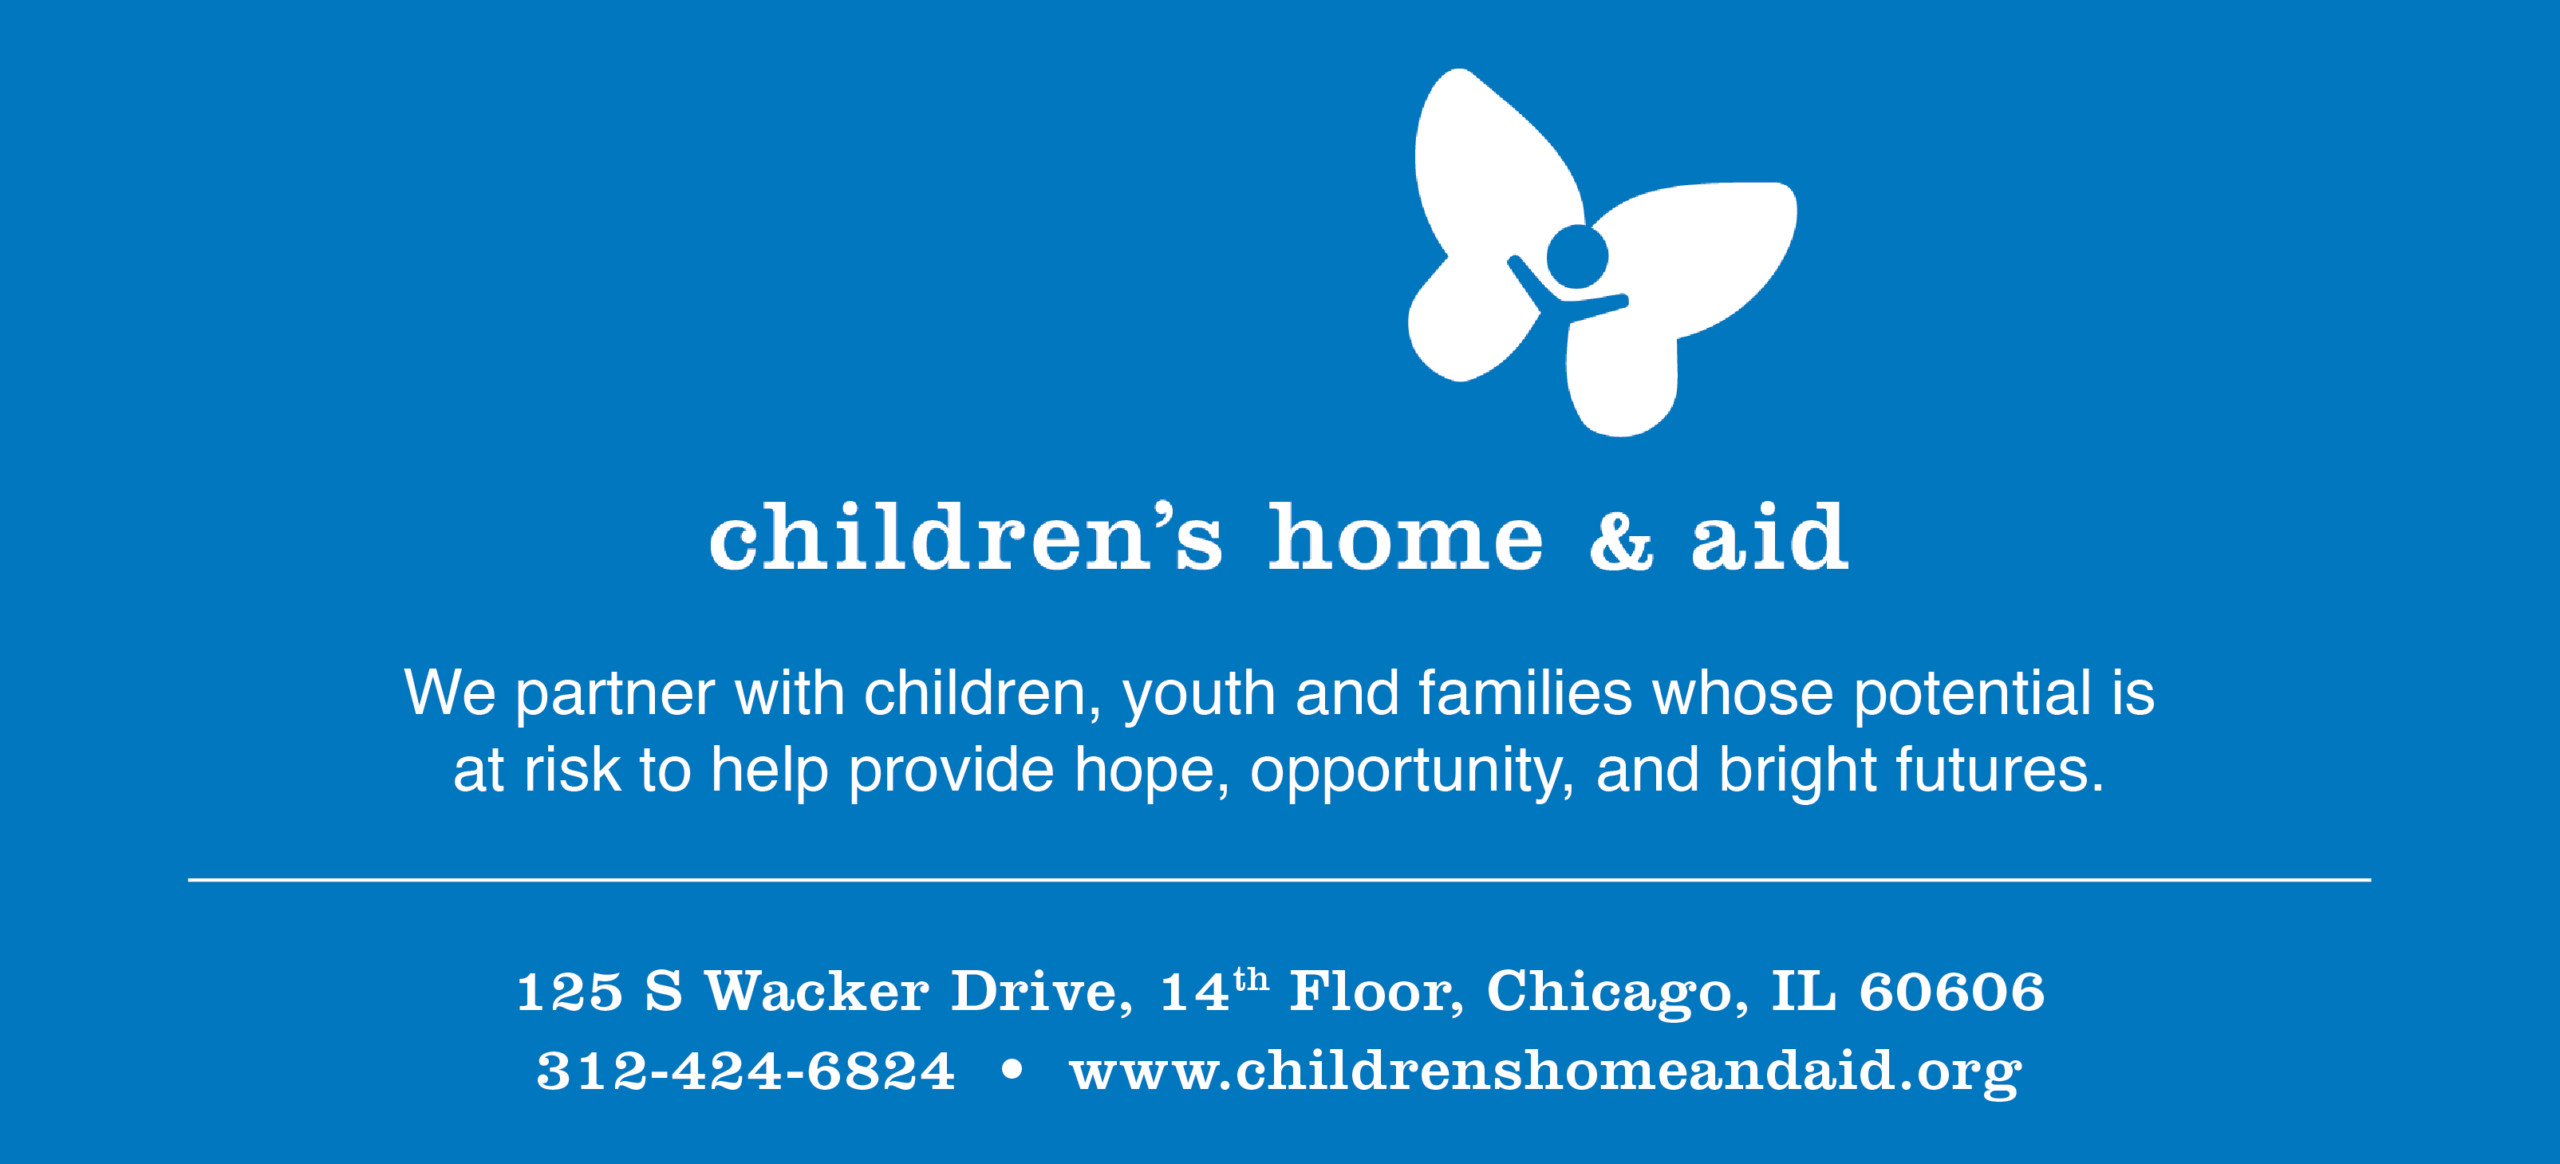 Children's Home & Aid